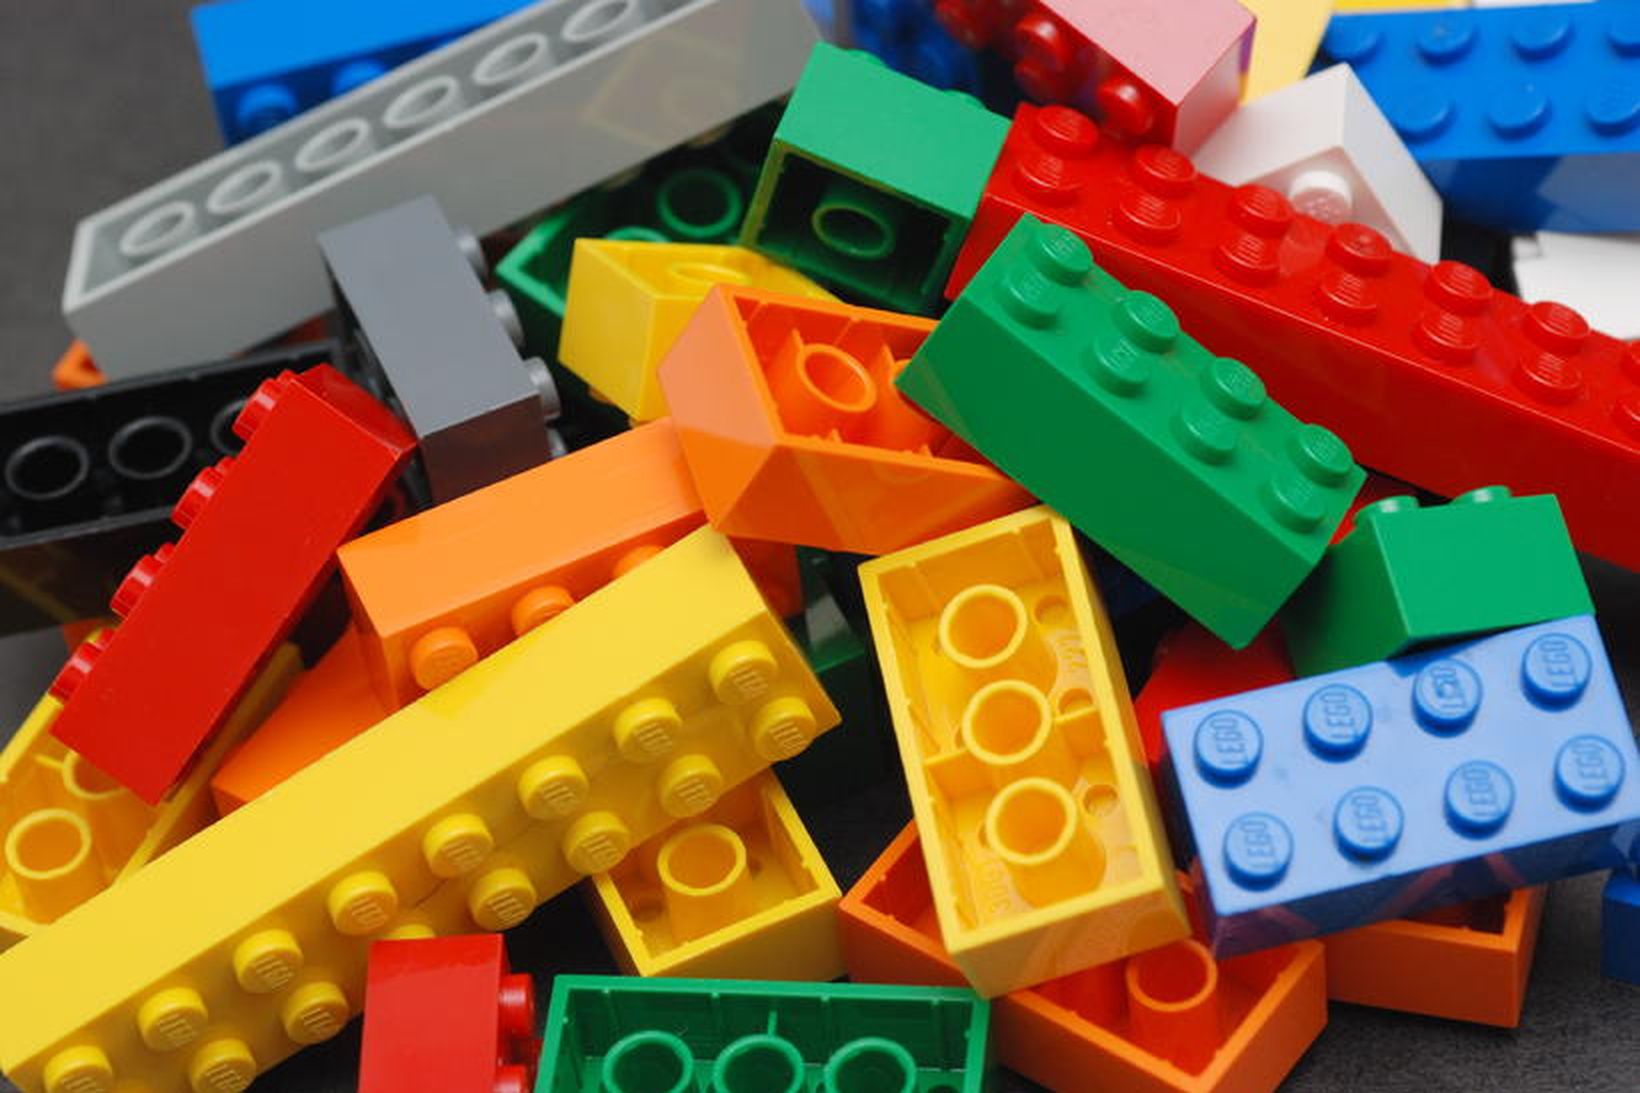 Mesti verðmunur í krónum talið er 9.500 krónur en Lego …